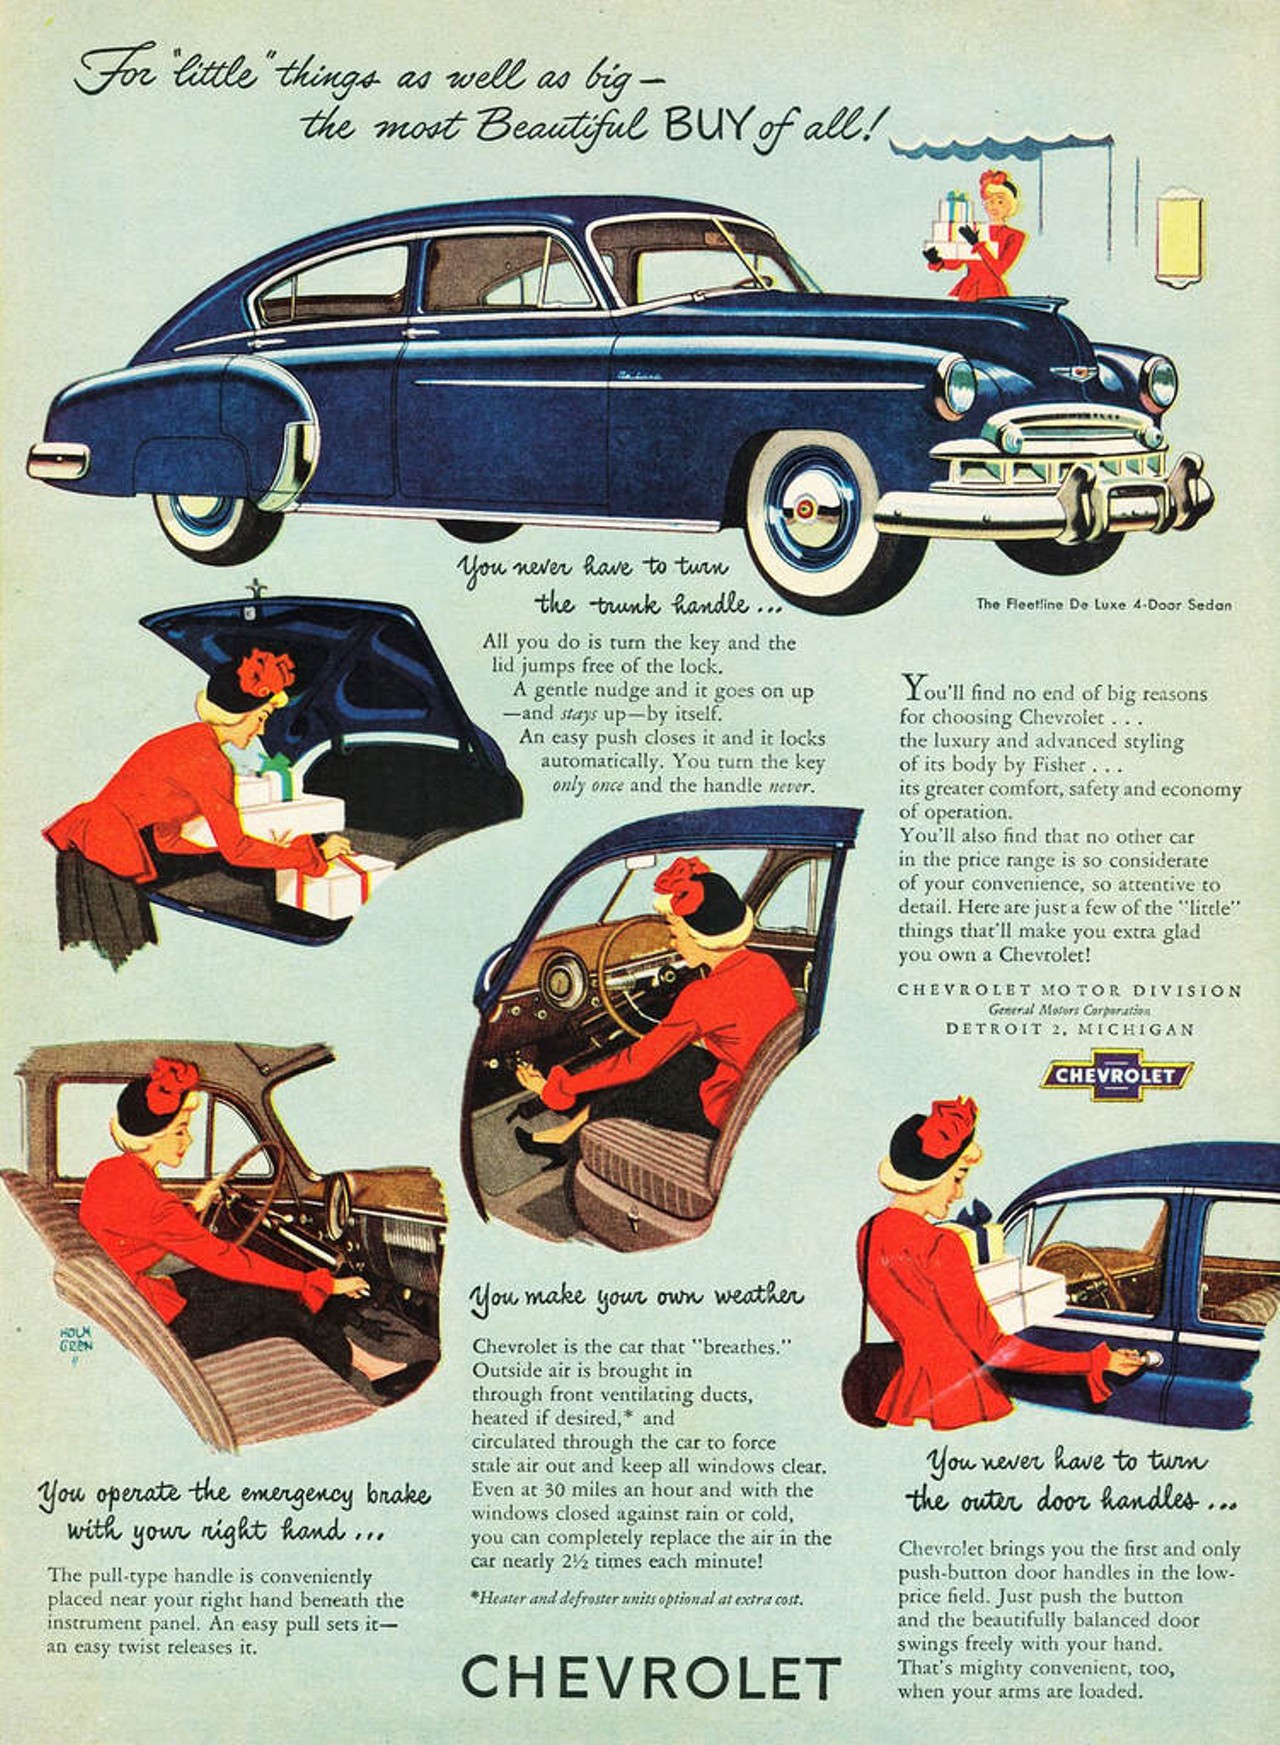 Chevrolet Fleetline DeLuxe 4-Door Sedan, 1949 (Image courtesy of Alden Jewell, Flickr Creative Commons)